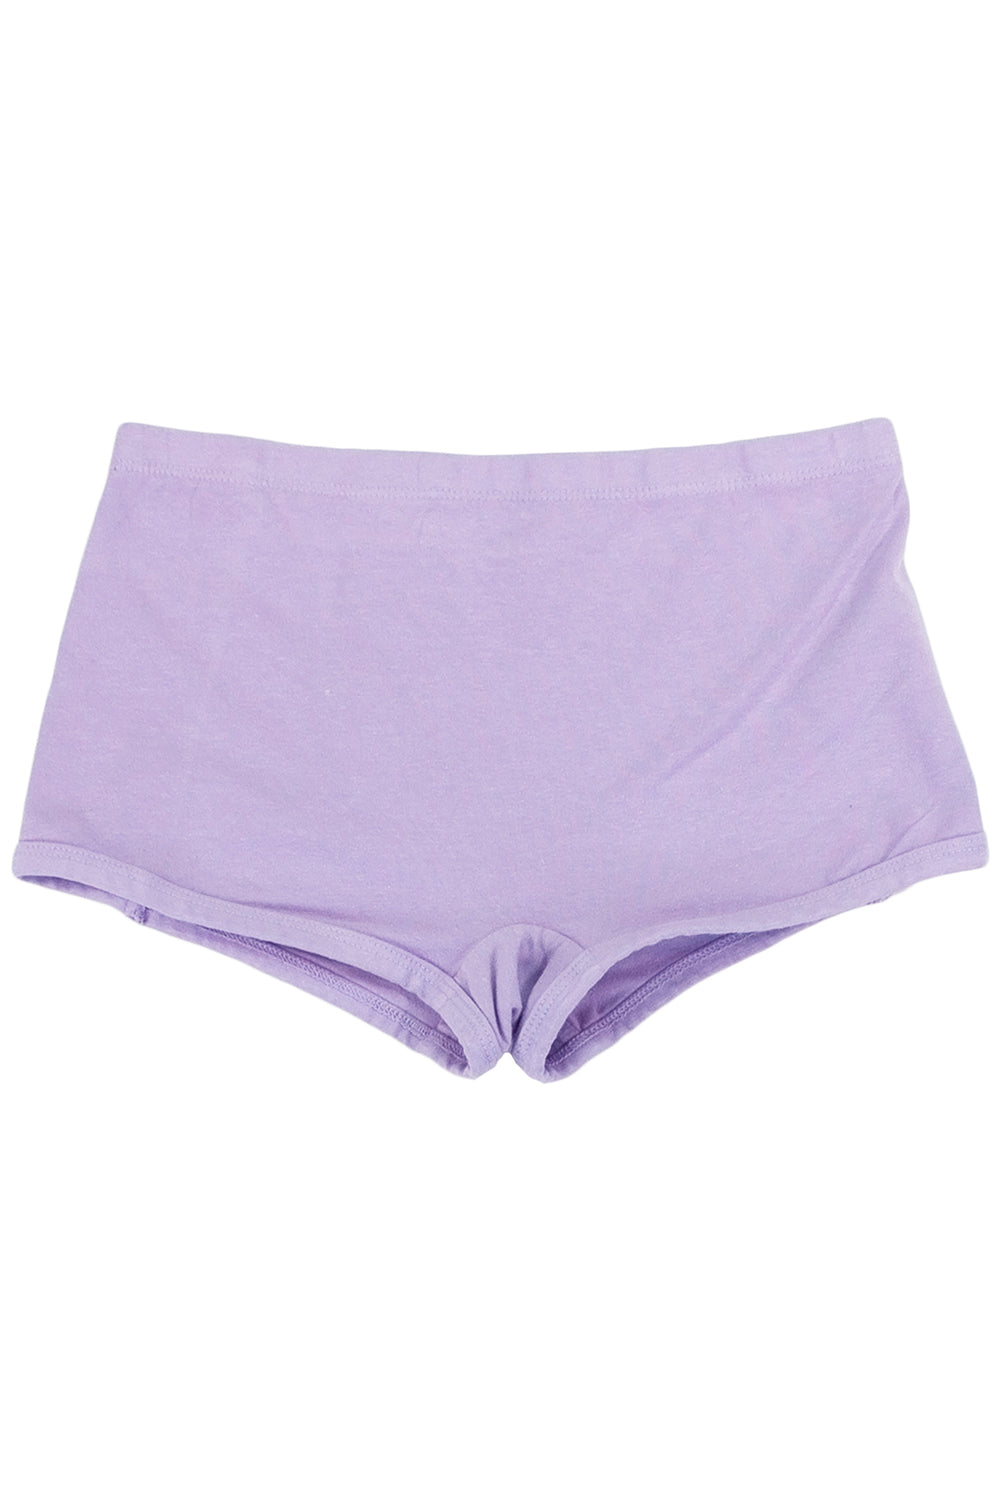 Boy Short - Sale Colors | Jungmaven Hemp Clothing & Accessories / Color: Misty Lilac